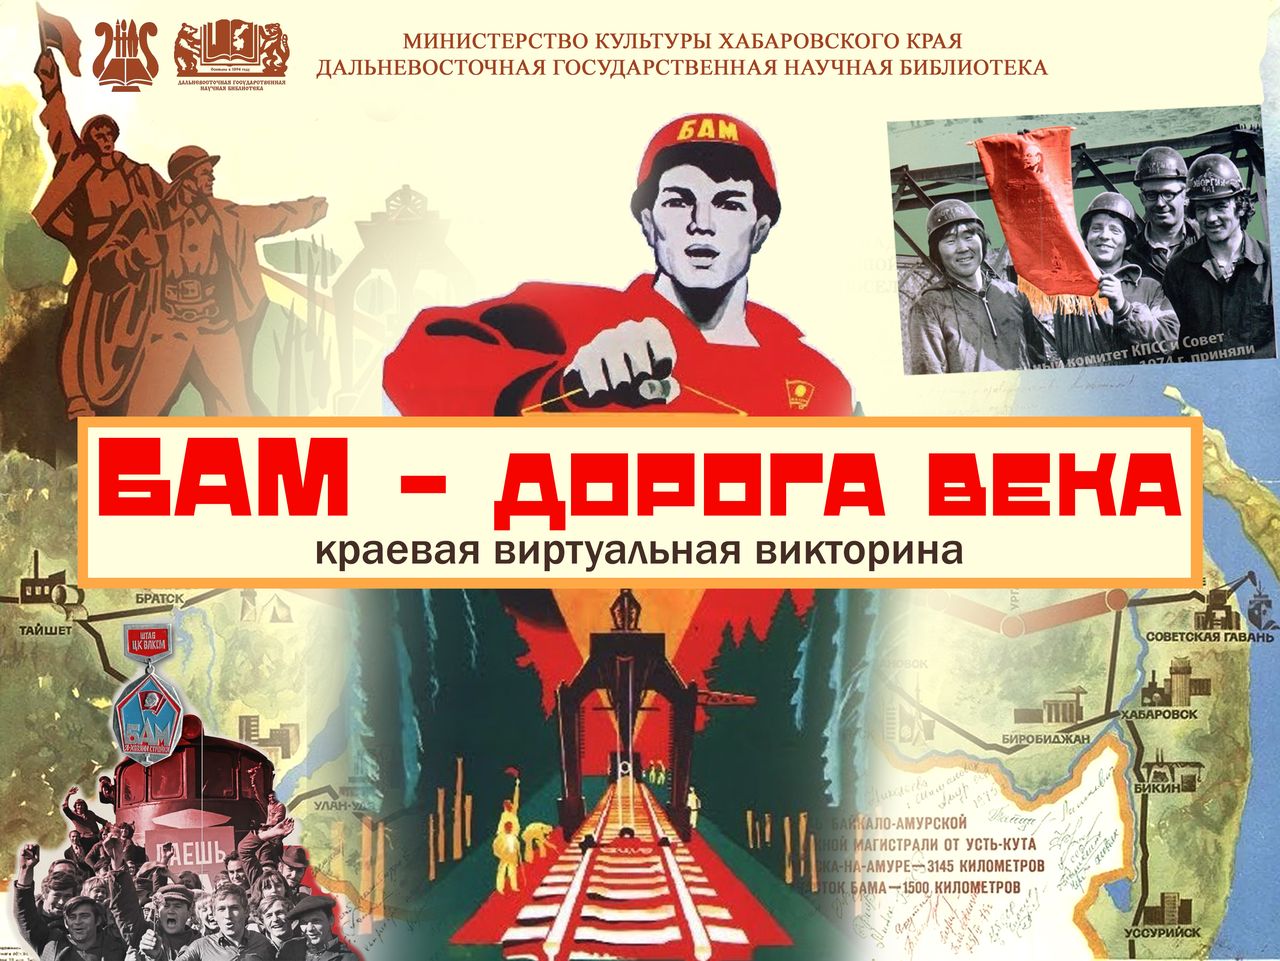 Краевая виртуальная викторина к 50-летию Байкало-Амурской магистрали